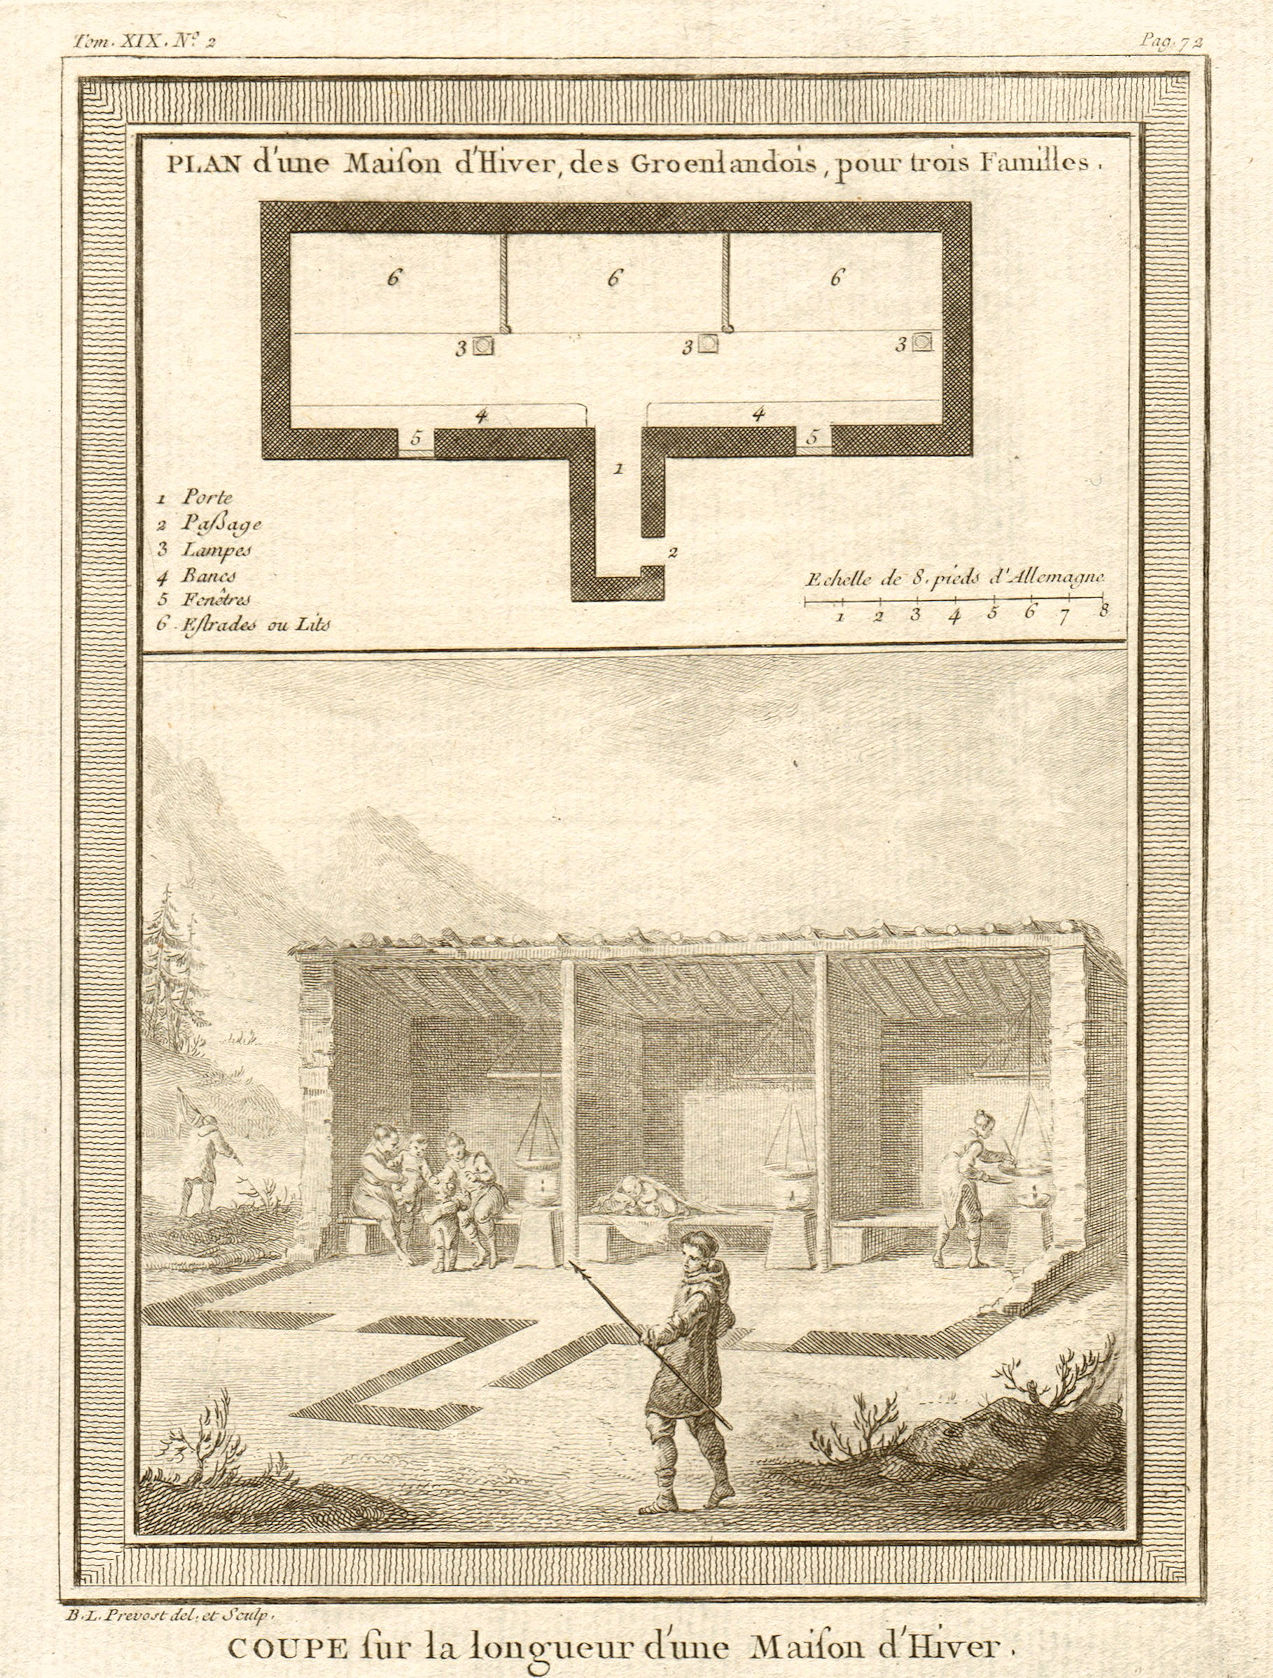 Associate Product 'Plan d'une Maison d'Hiver des Groenlandois'. Greenlanders' winter house 1770